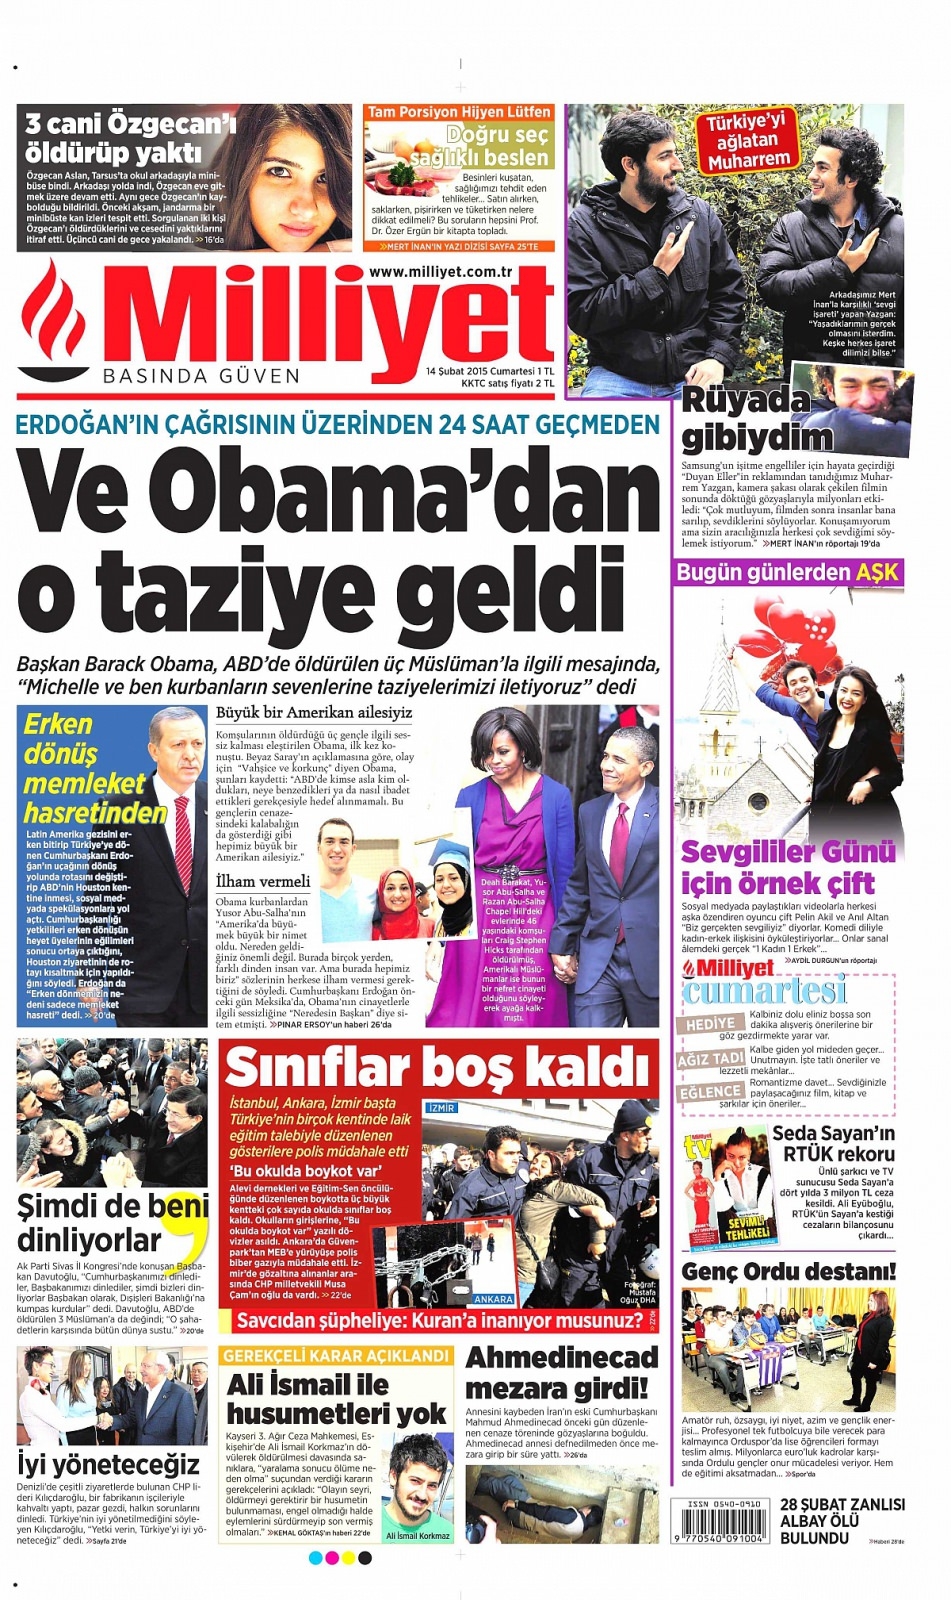 14 Şubat 2015 Gazete manşetleri 3